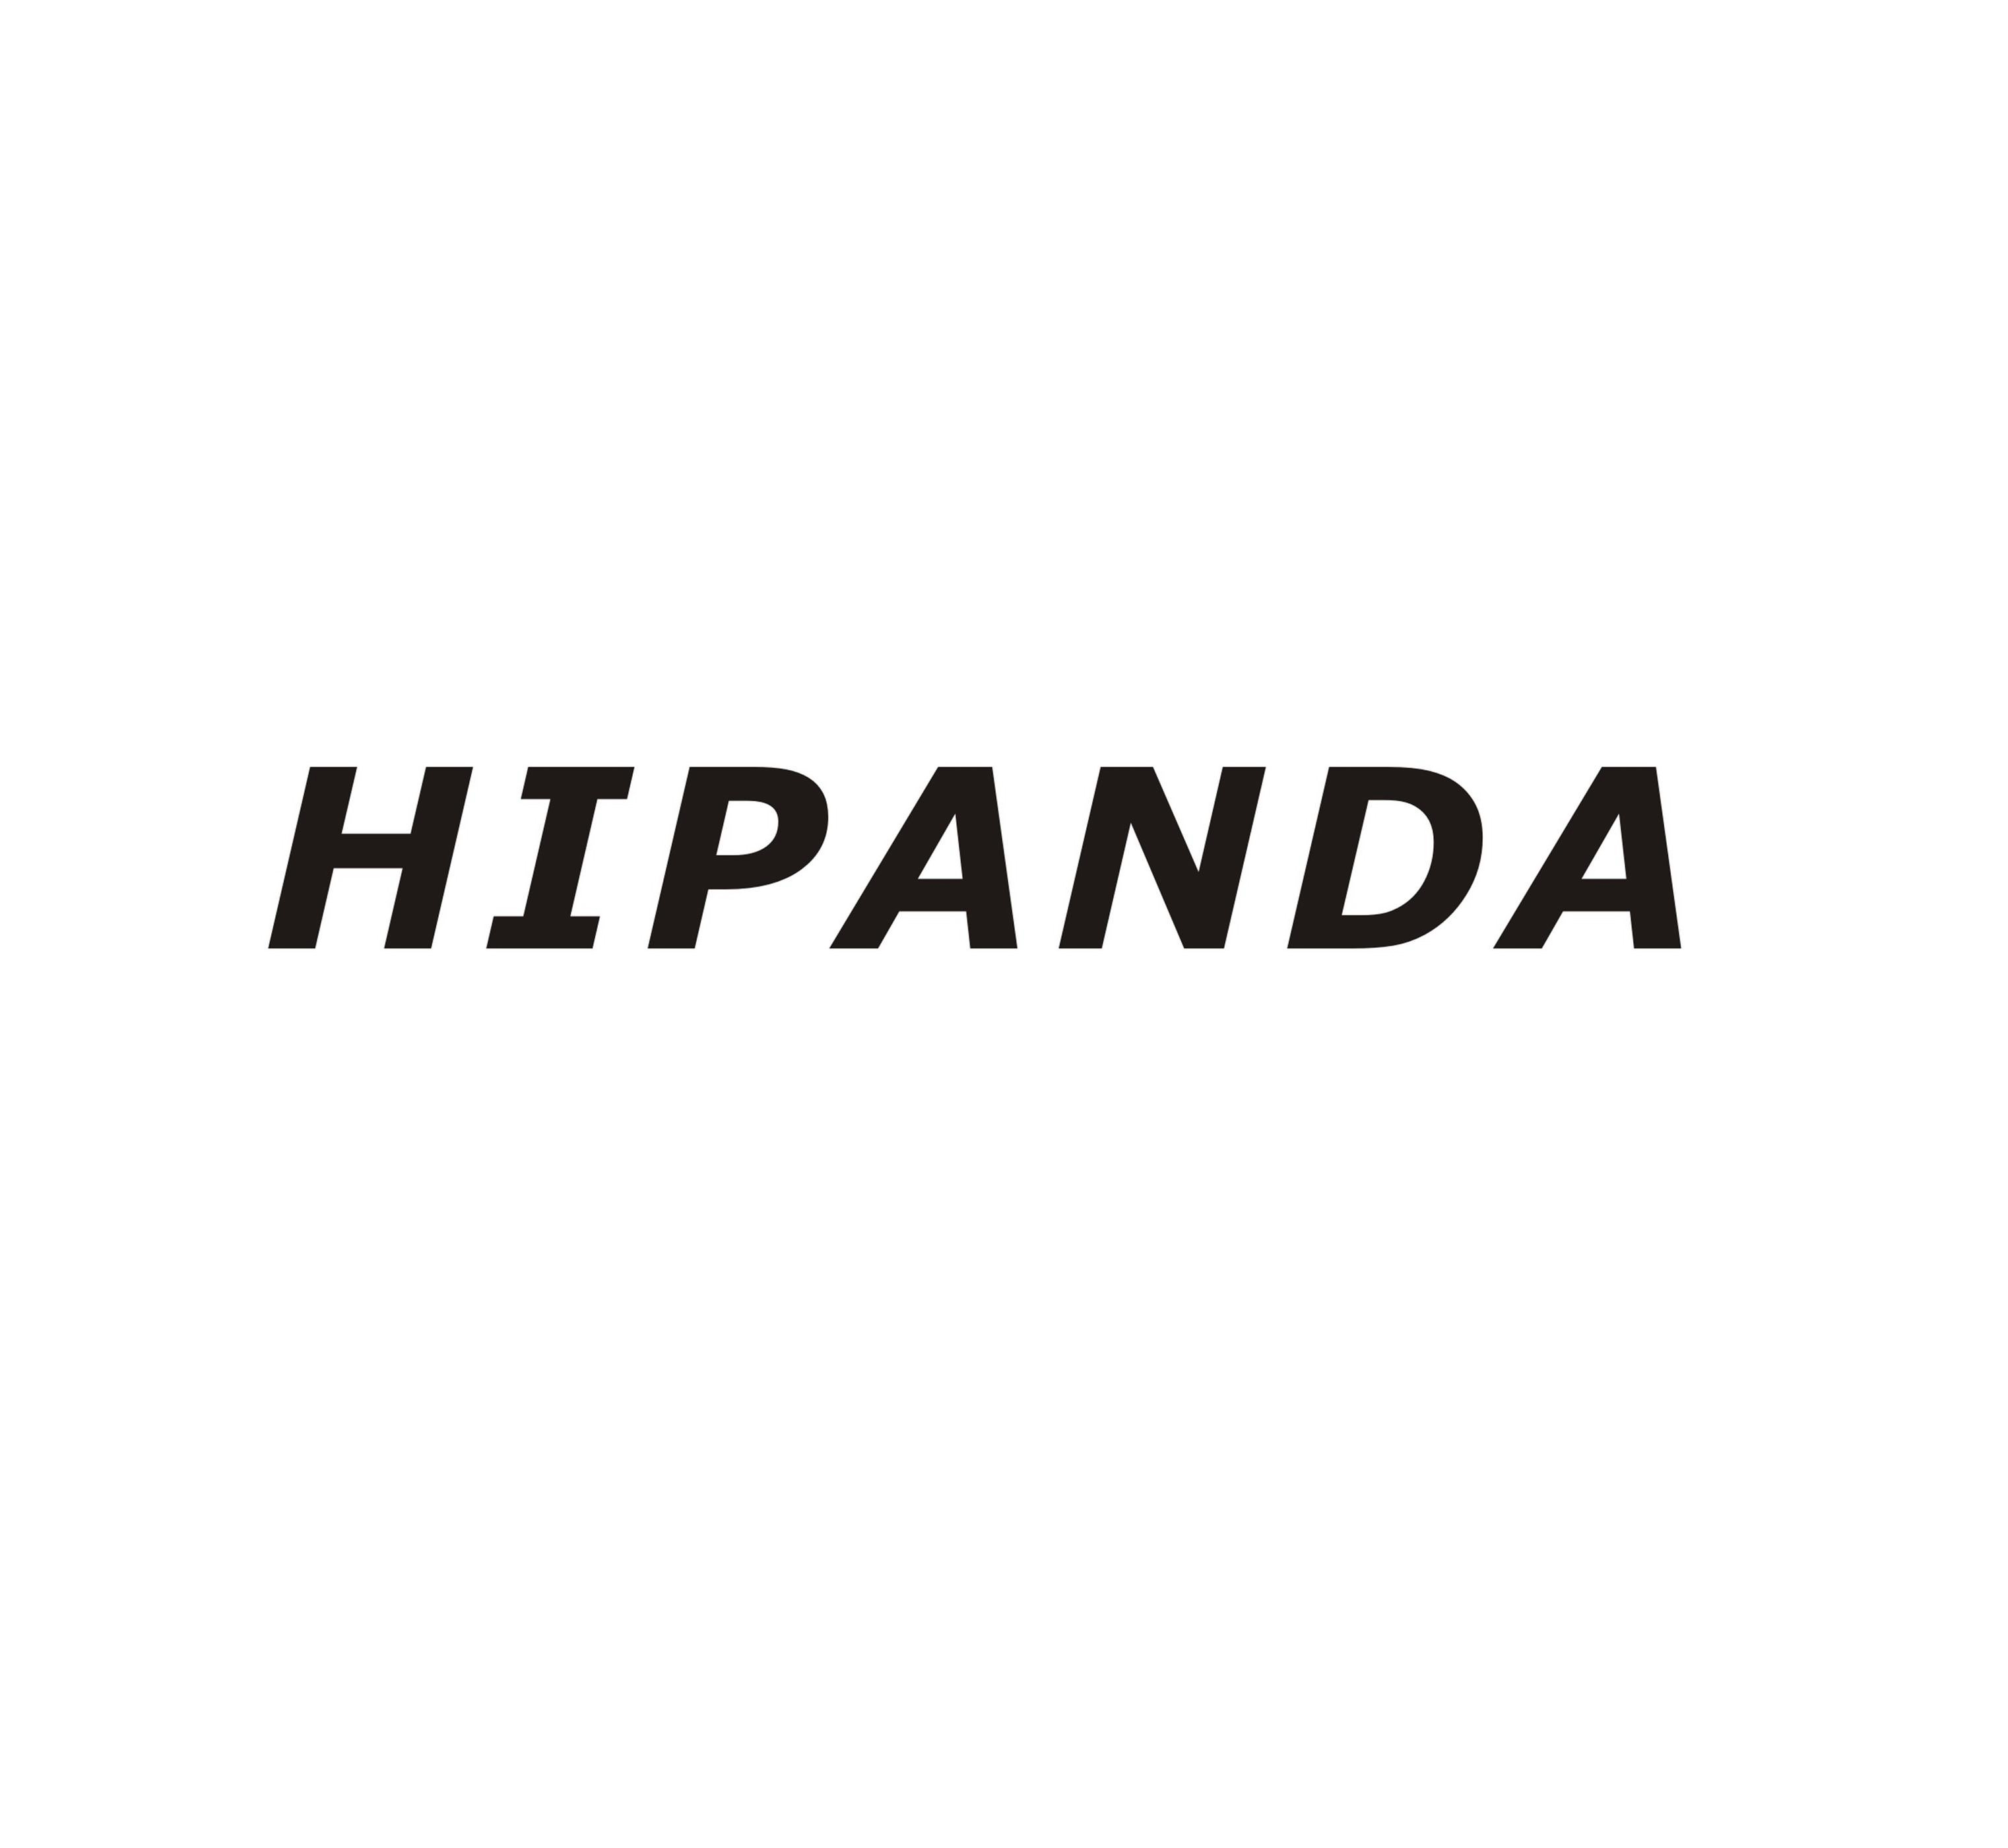  HIPANDA